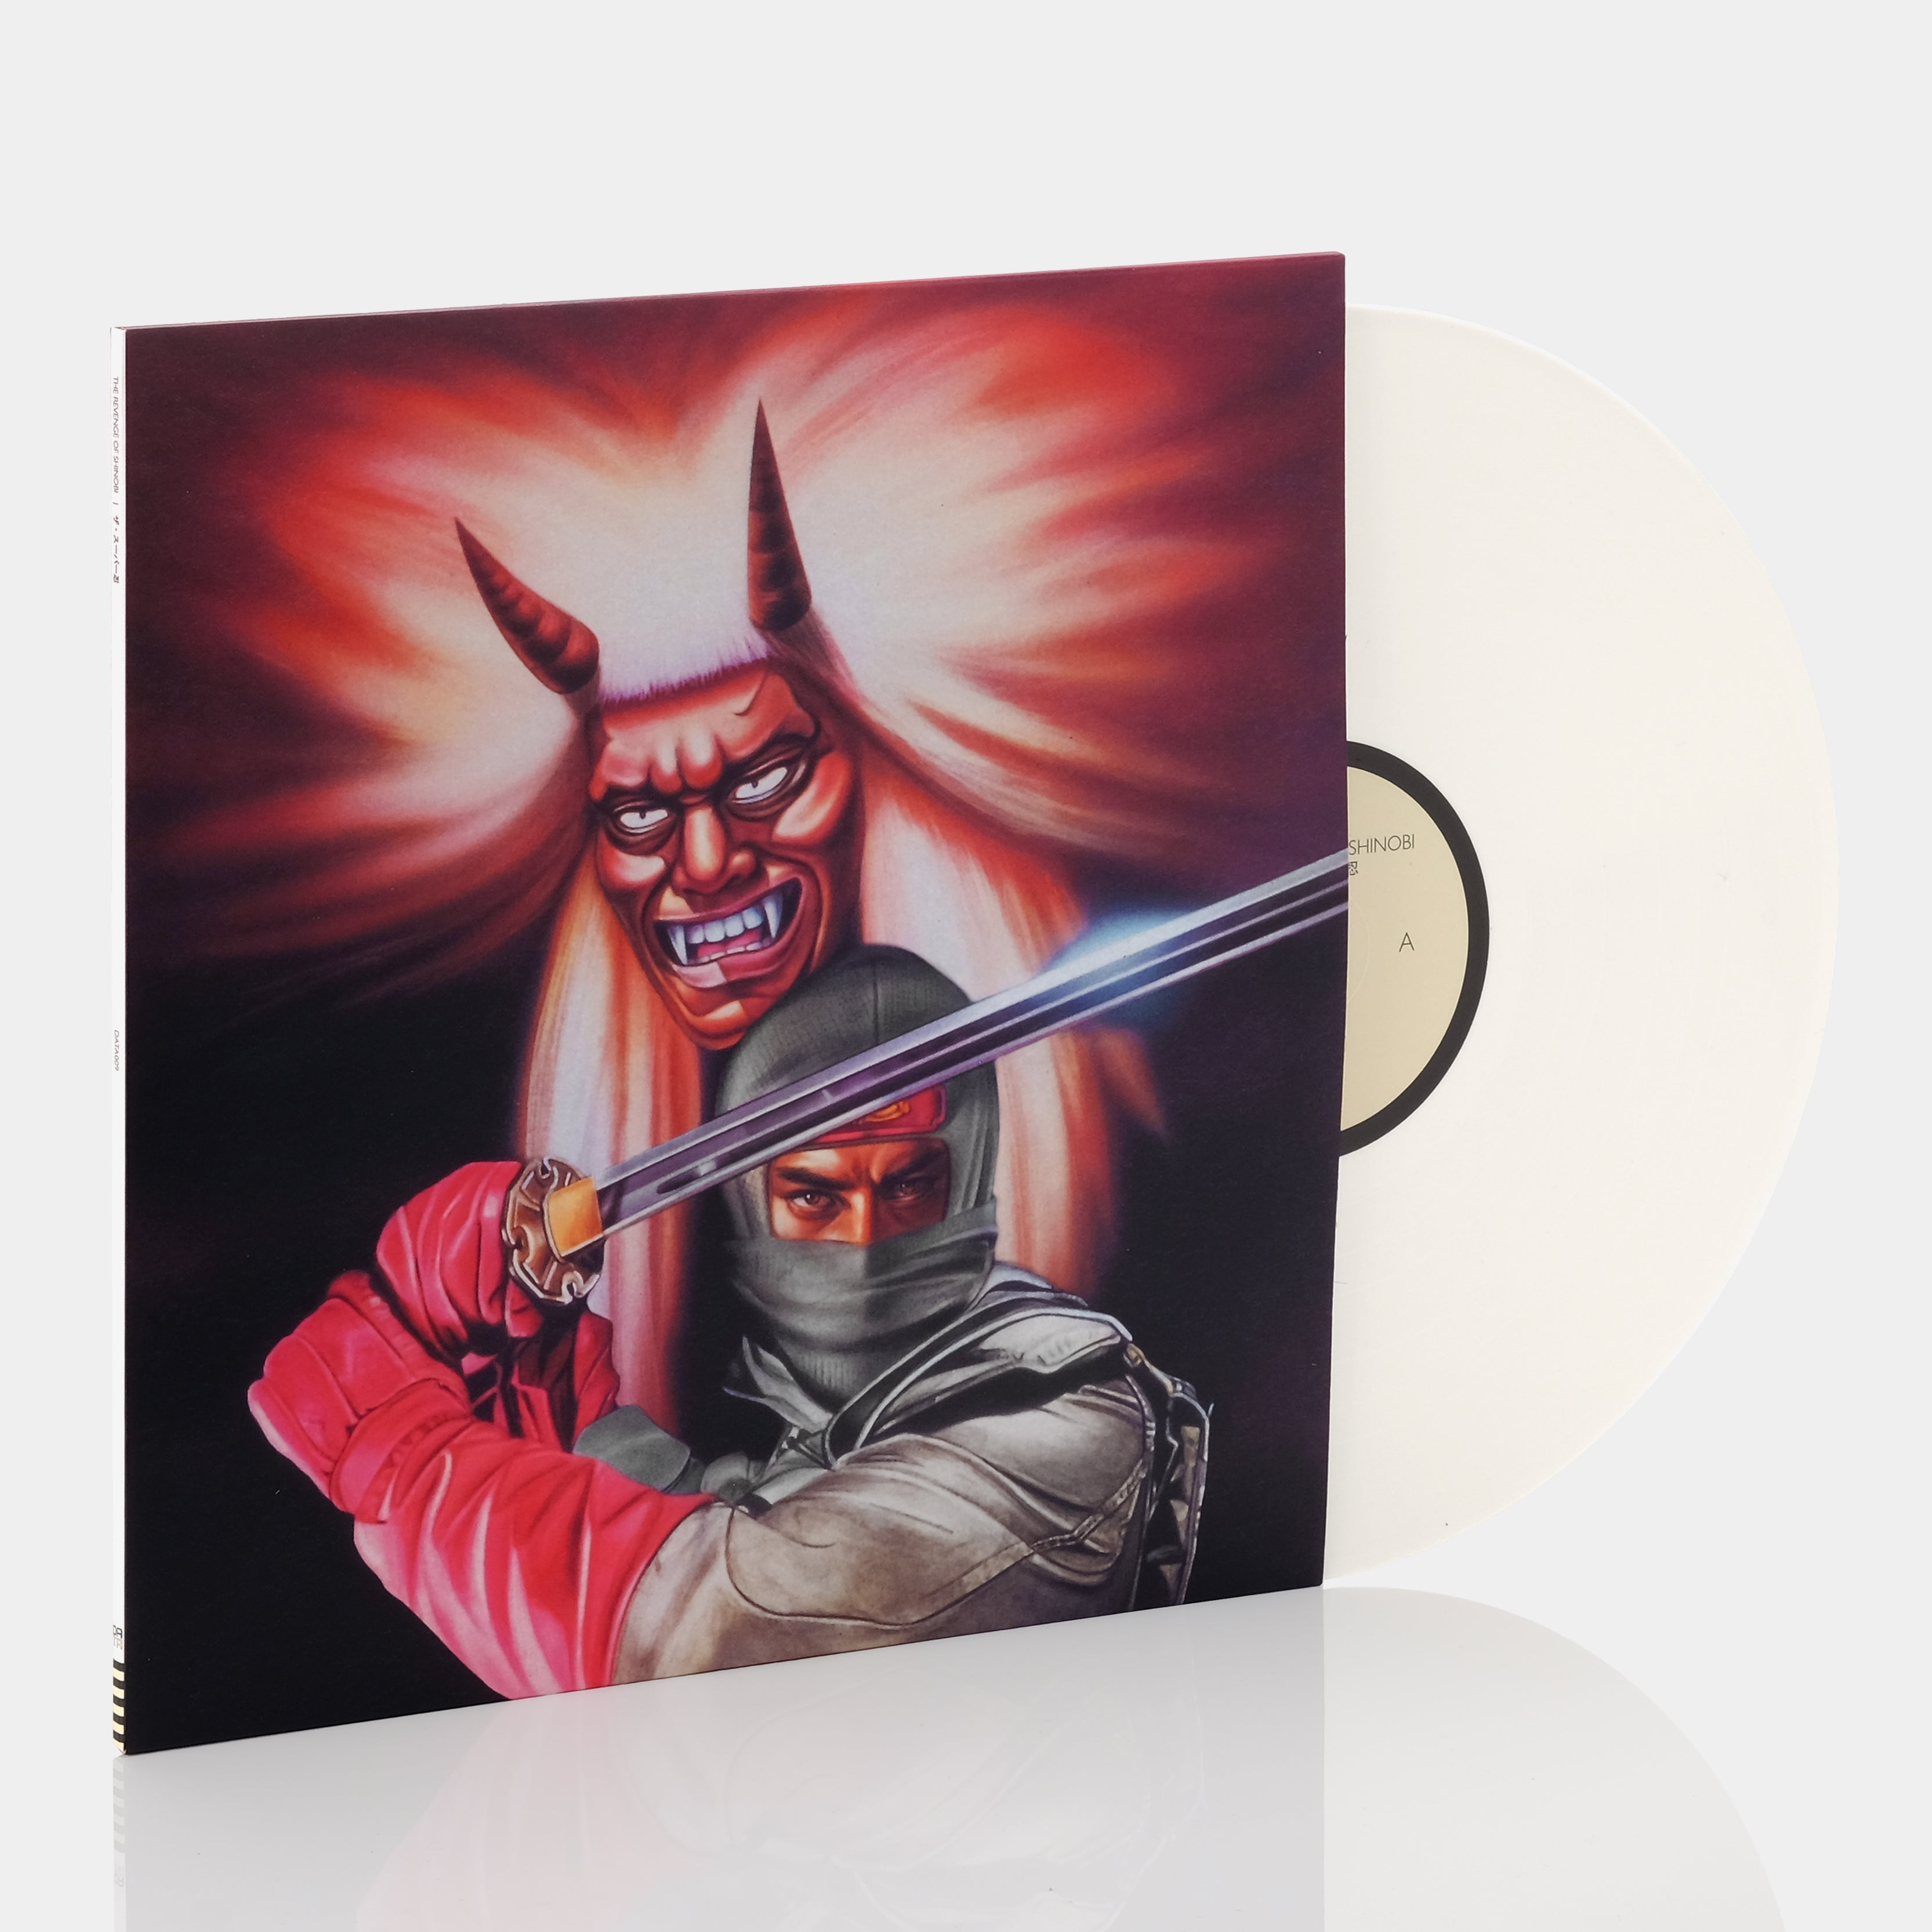 Yuzo Koshiro - The Revenge Of Shinobi LP Bone Vinyl Record